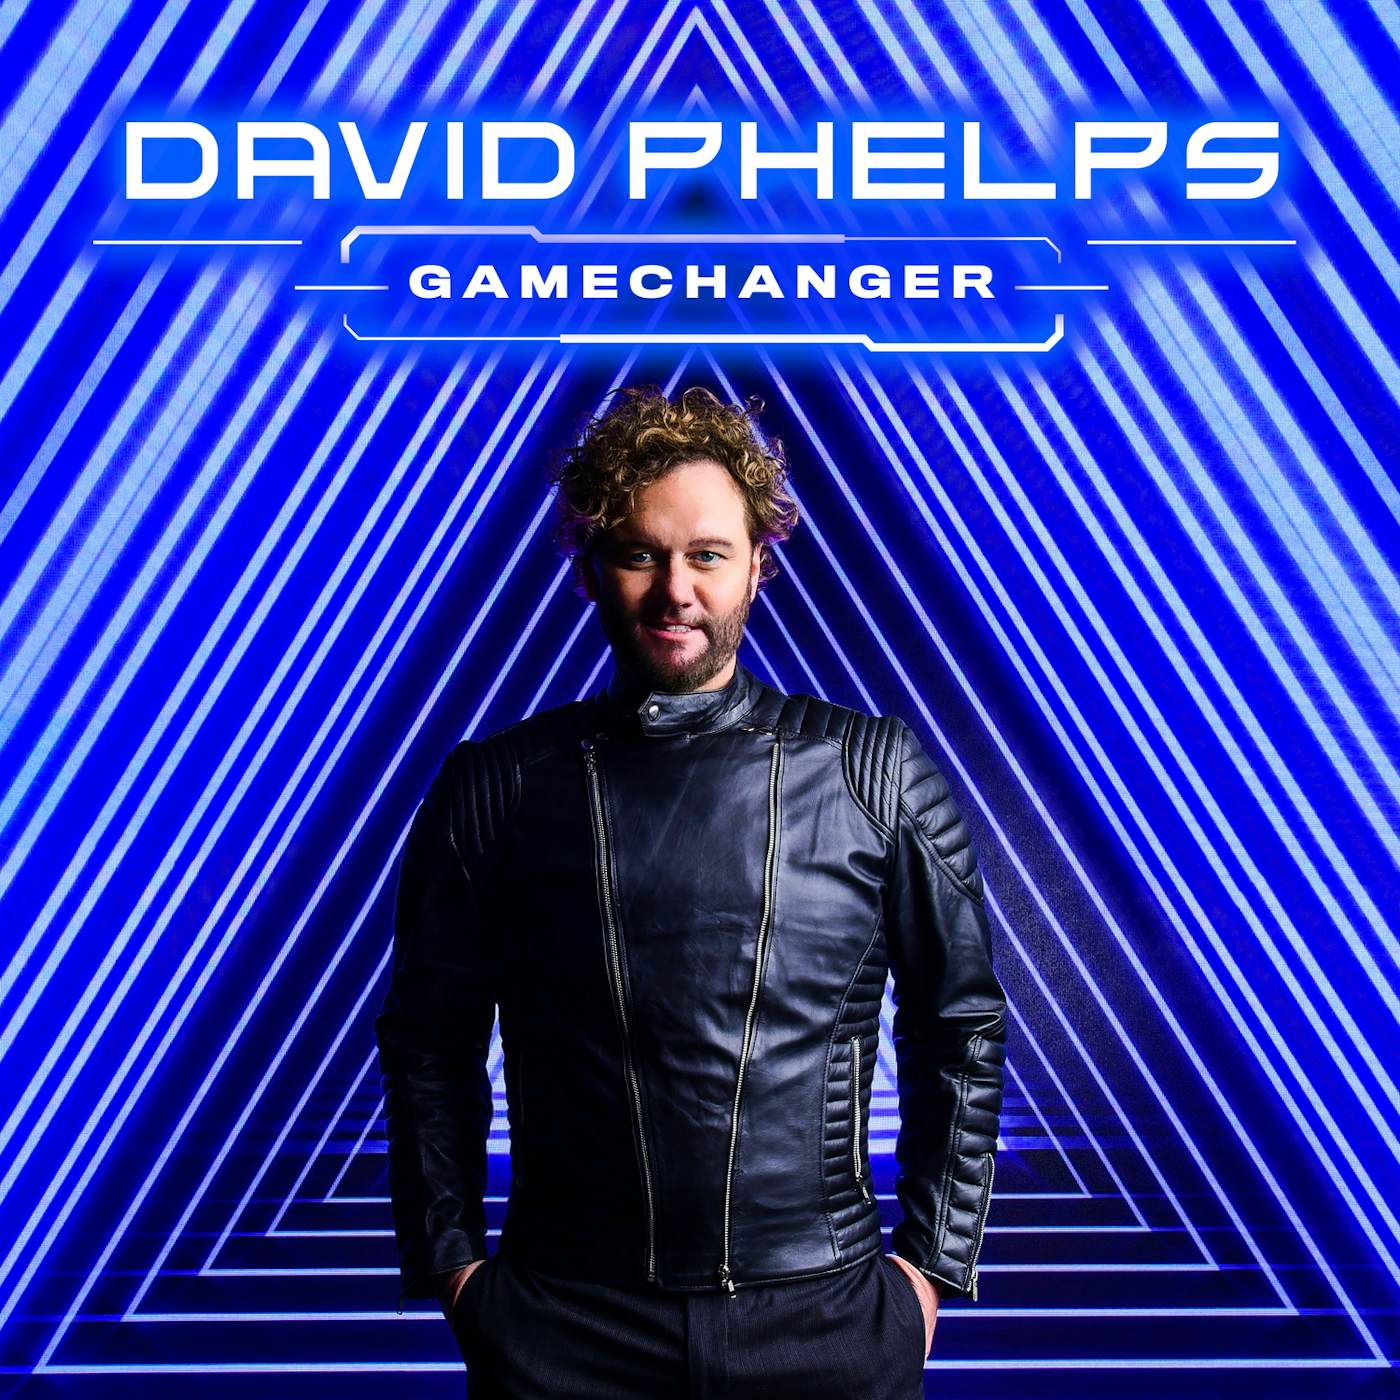 David Phelps GAMECHANGER CD